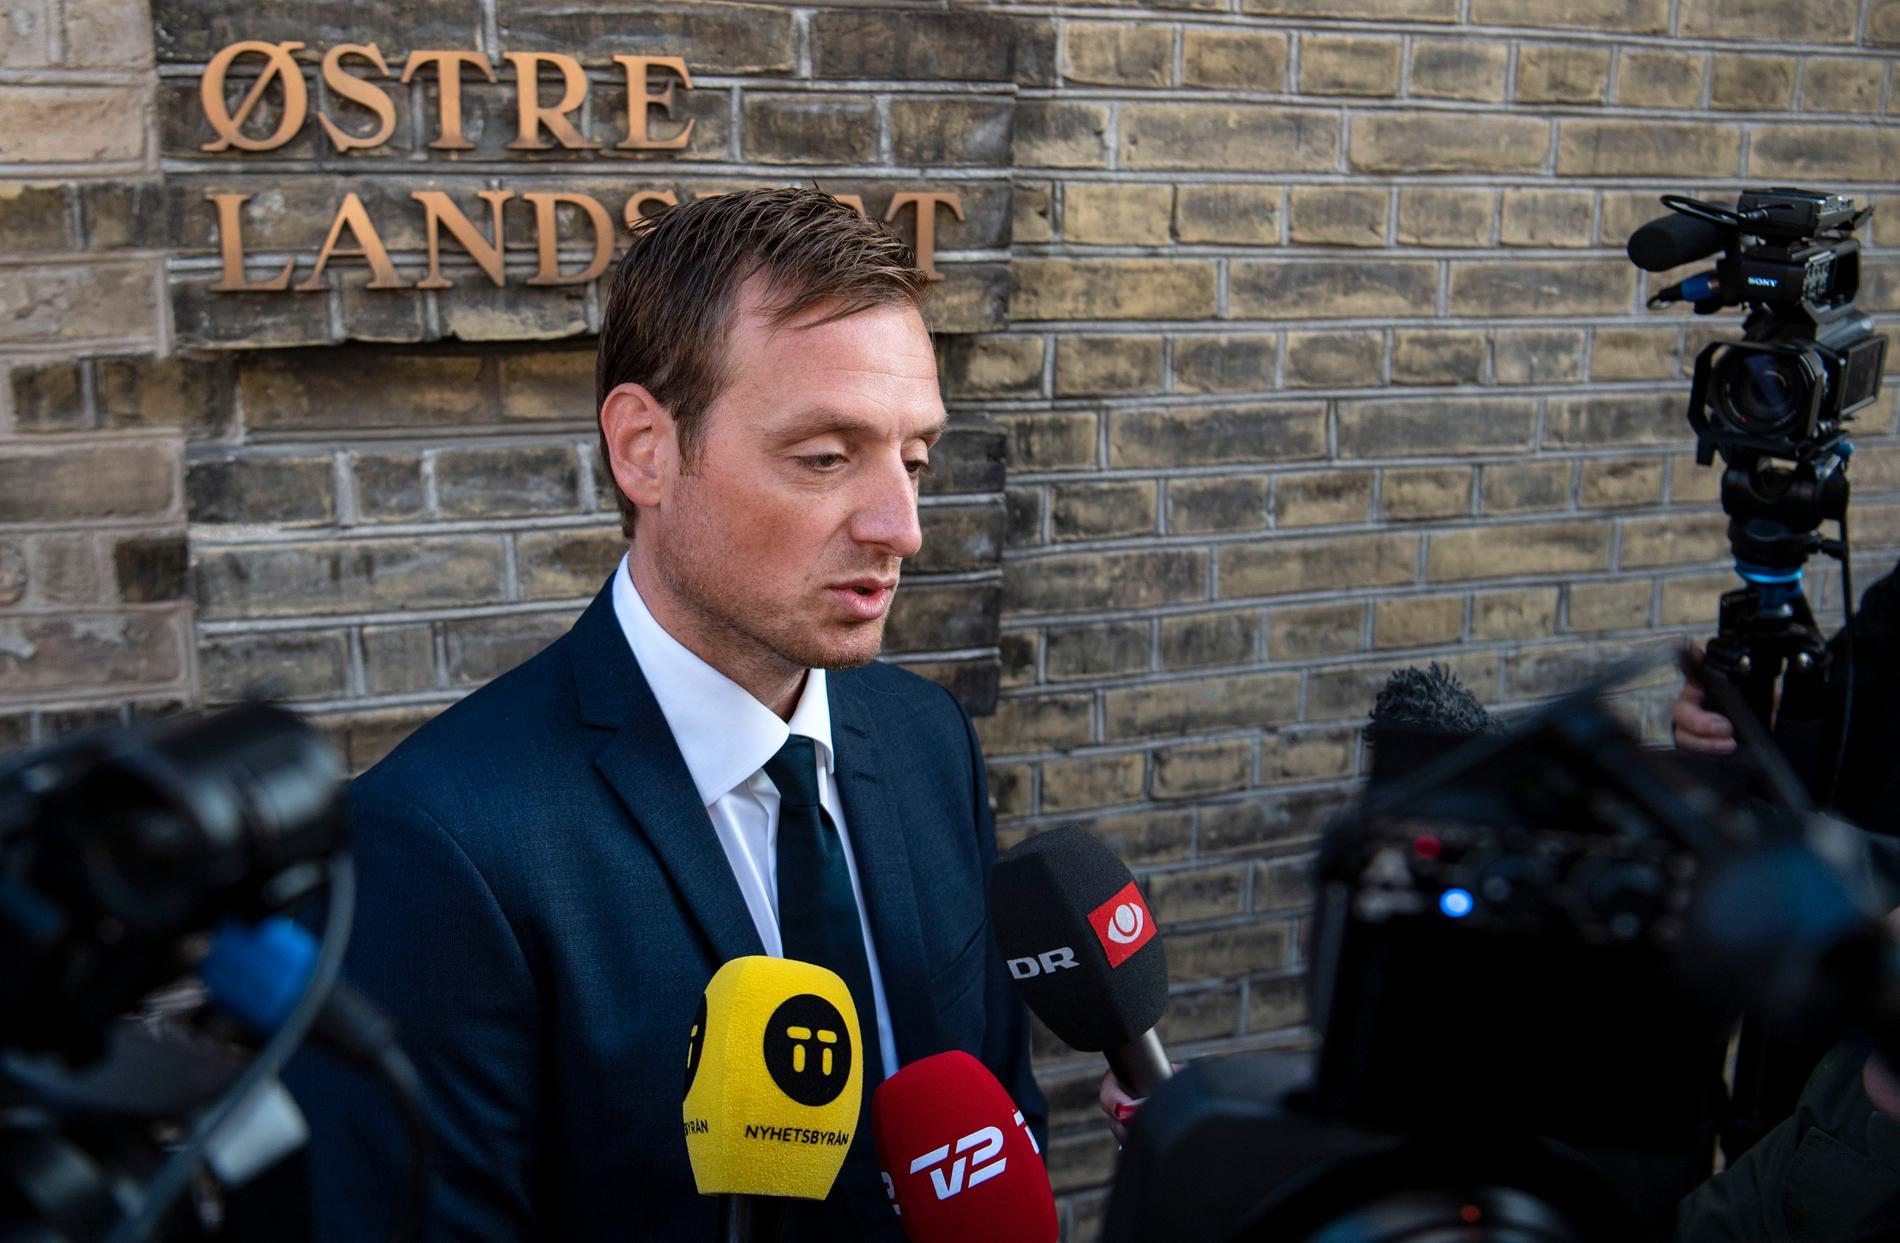 Åklagaren Kristian Kirk Petersen på väg till Østre landsret i samband med rättegångsstarten mot morddömde Peter Madsen förra veckan.